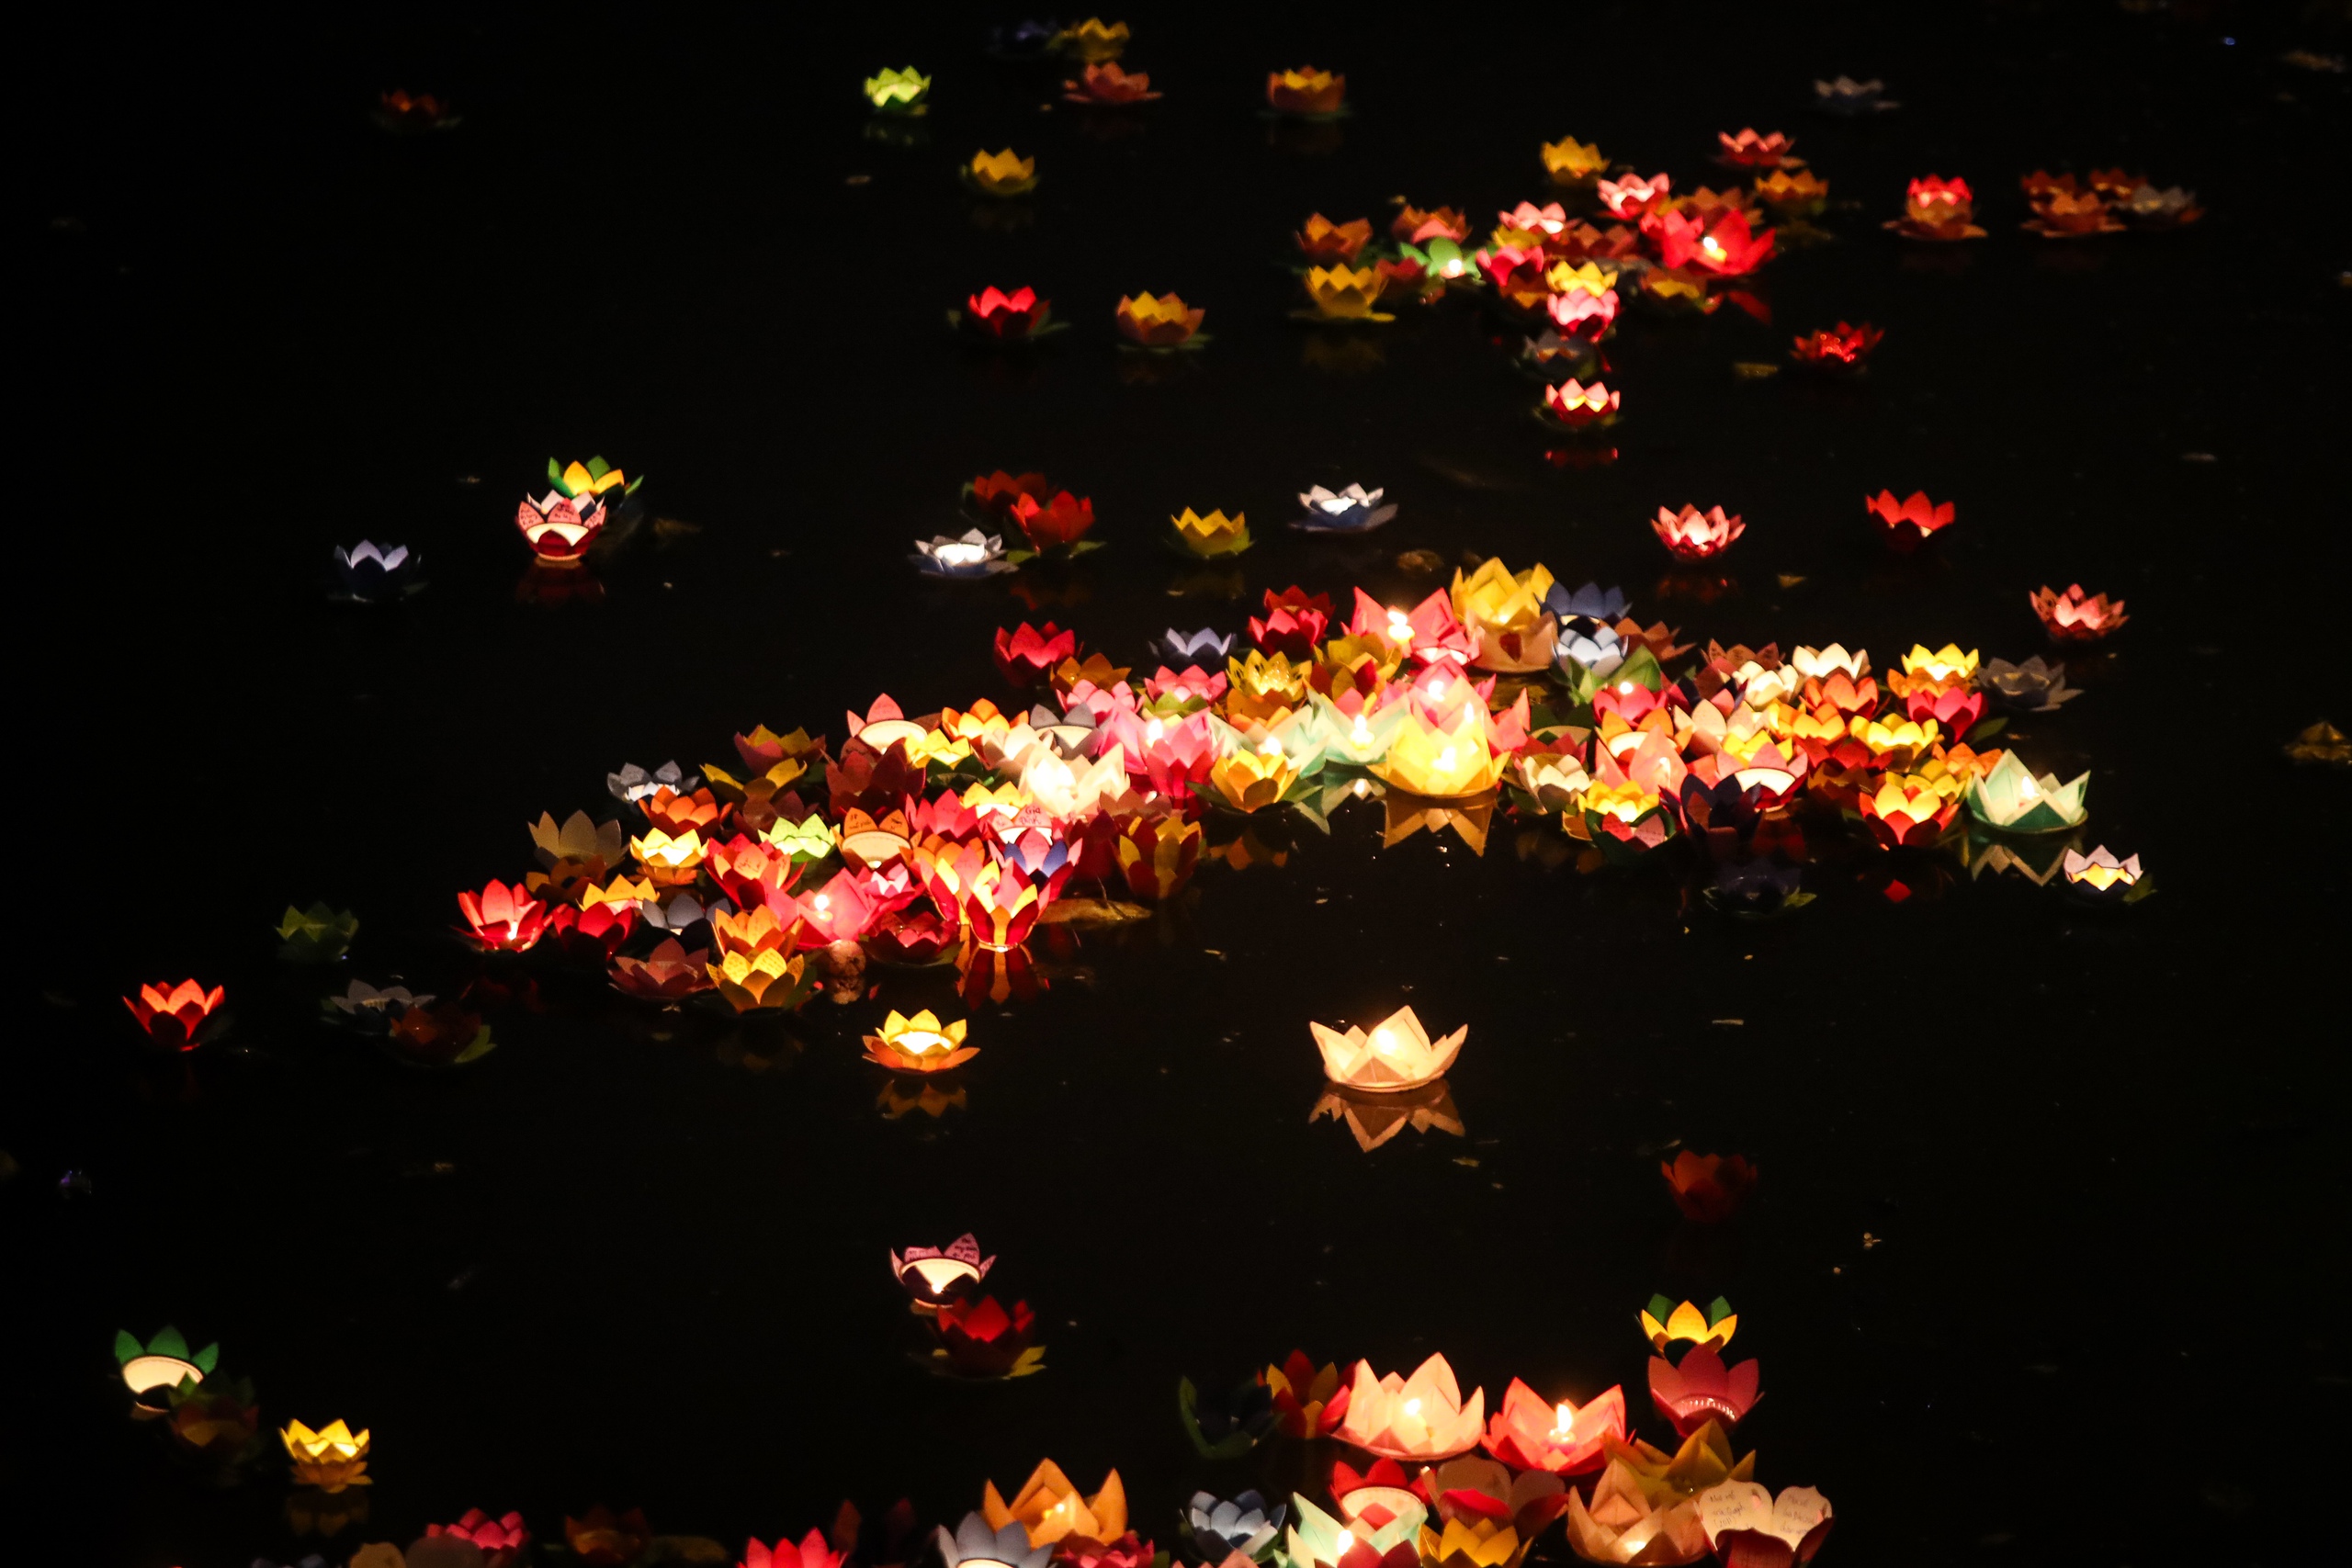 Người dân viết những điều ước lên hoa đăng và thả xuống kênh Nhiêu Lộc trong dịp lễ Phật đản để cầu quốc thái dân an, tâm niệm an lạc